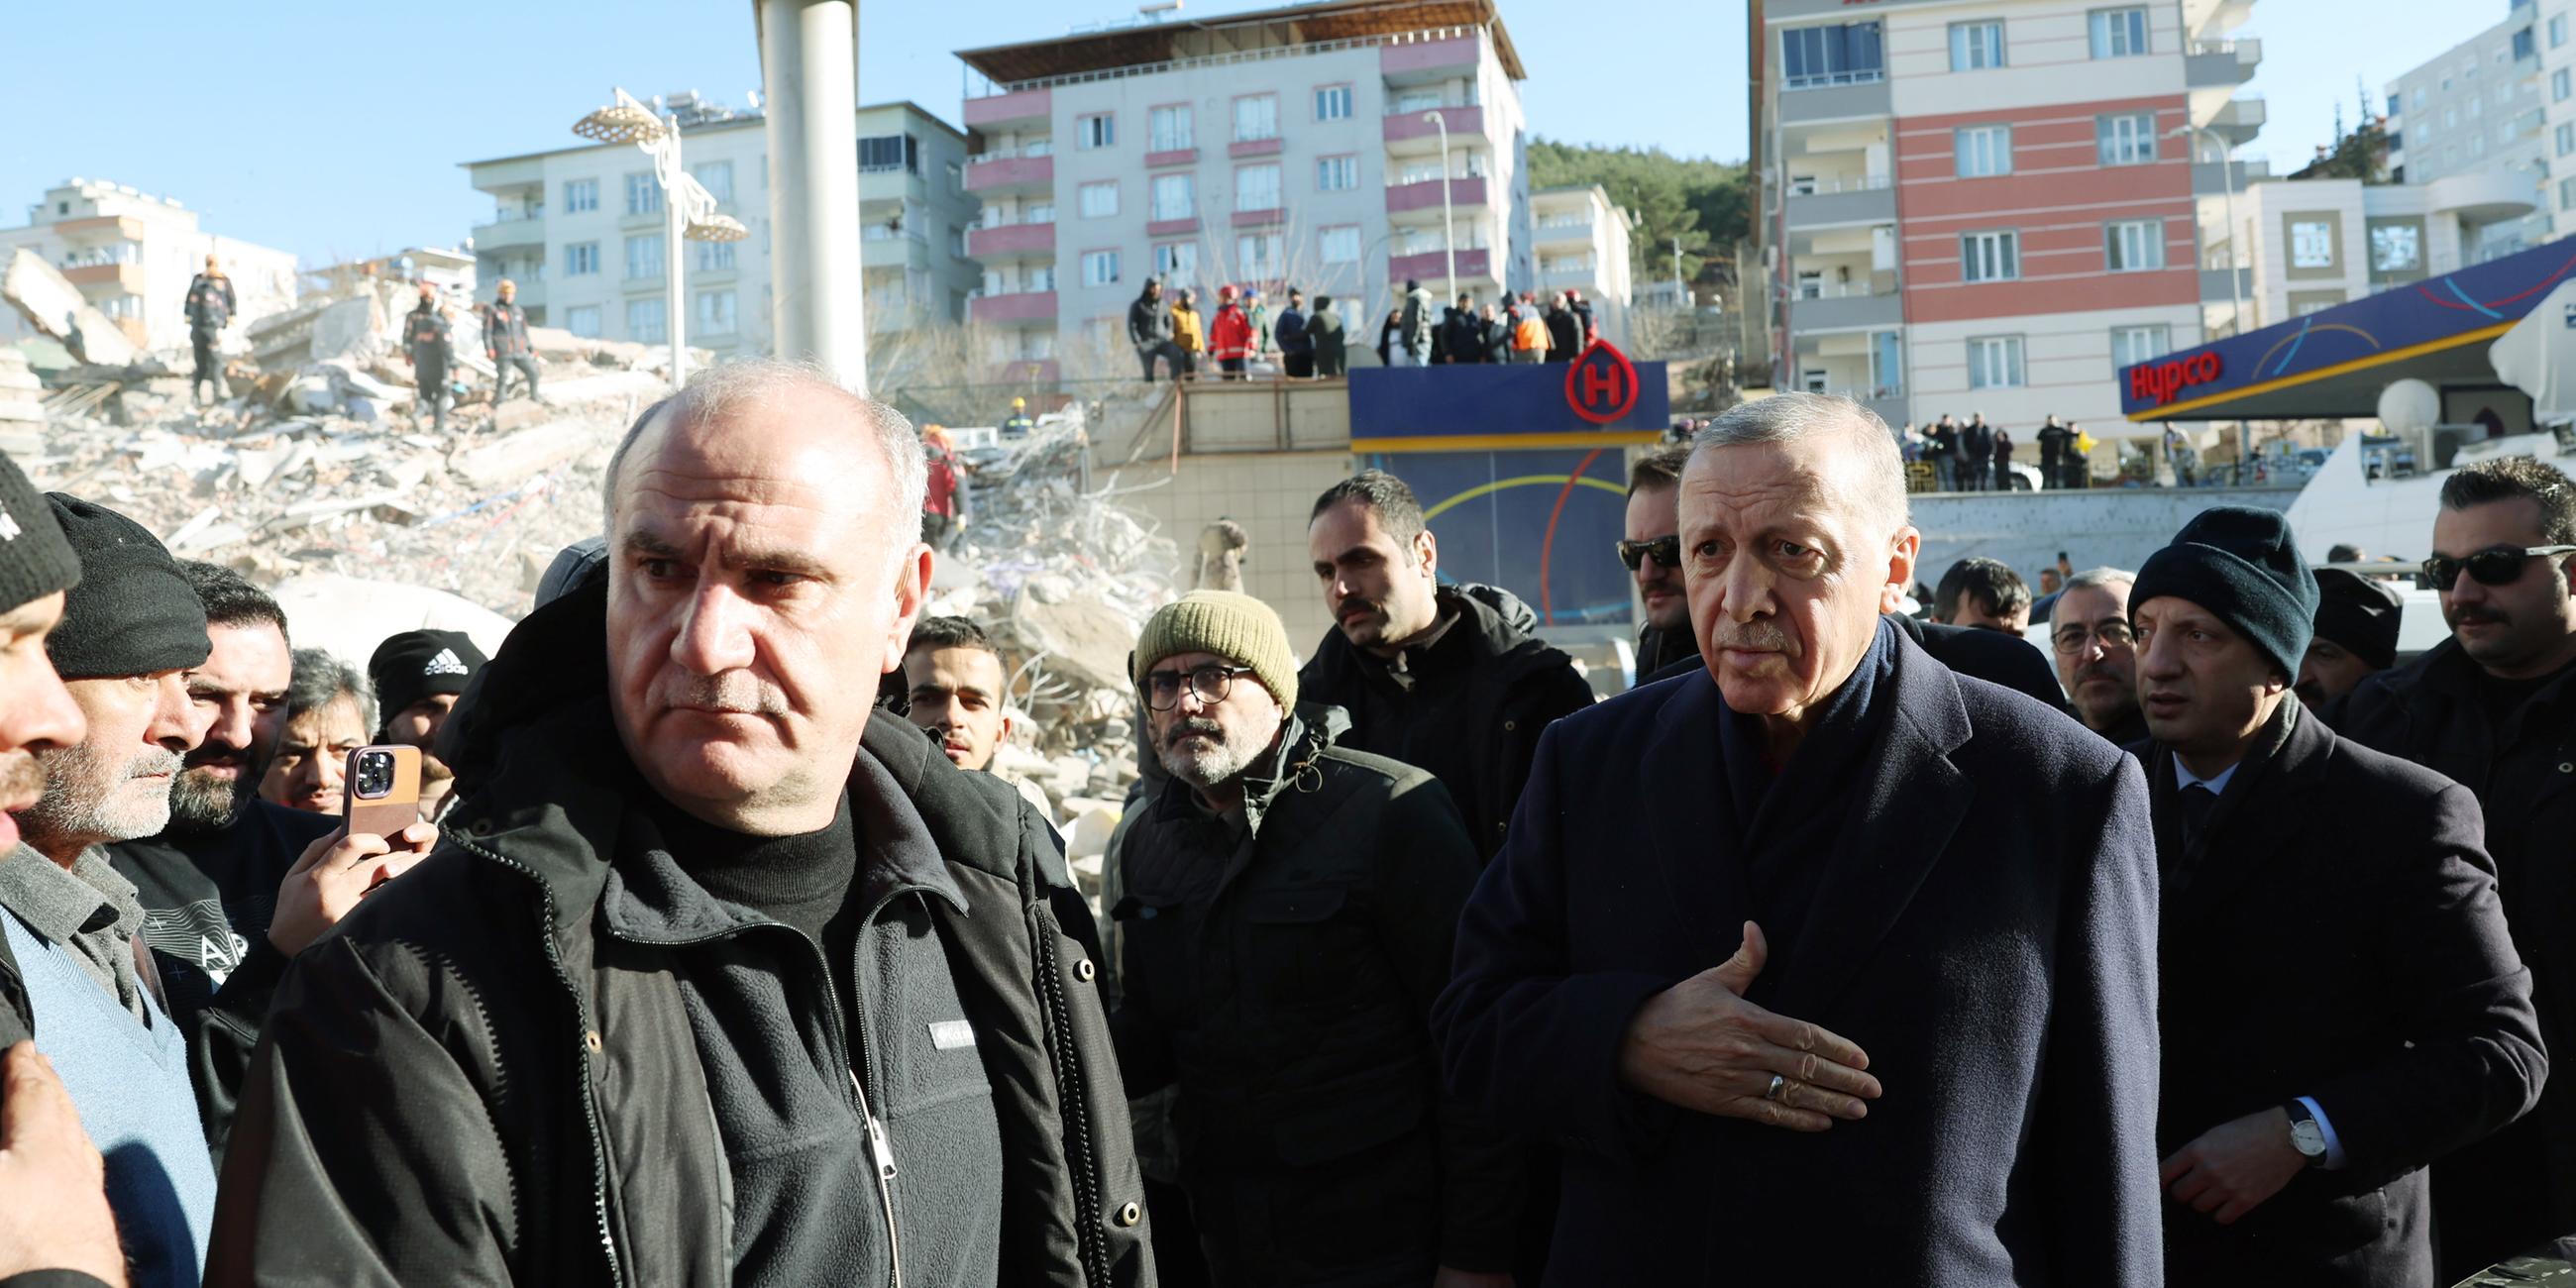 Präsident Erdogan mit vielen Menschen an einem Ort, der vom Erdbeben zerstört wurde.